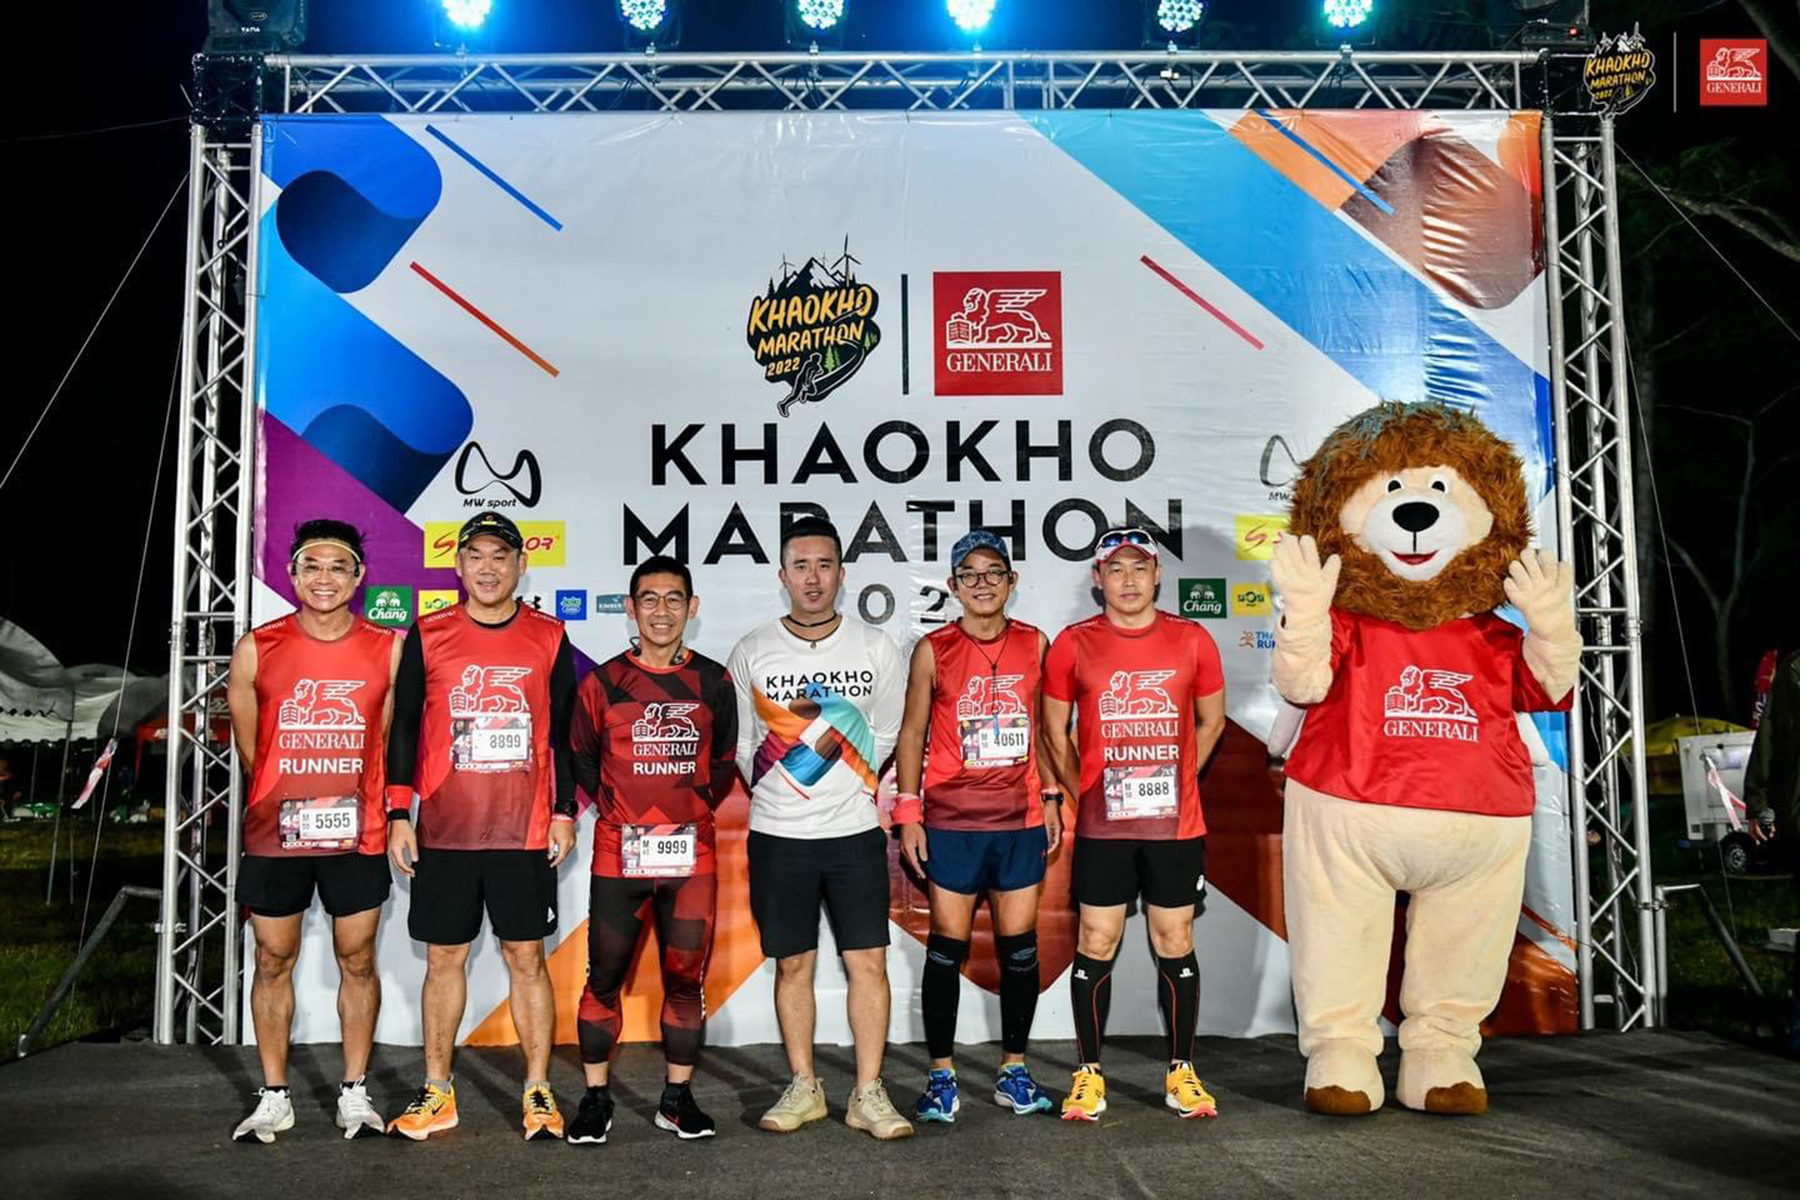 เจนเนอราลี่ เอาใจสายคนรักสุขภาพ สนับสนุนงาน “Khaokho Marathon 2022” ต่อเนื่องเป็นปีที่ 3